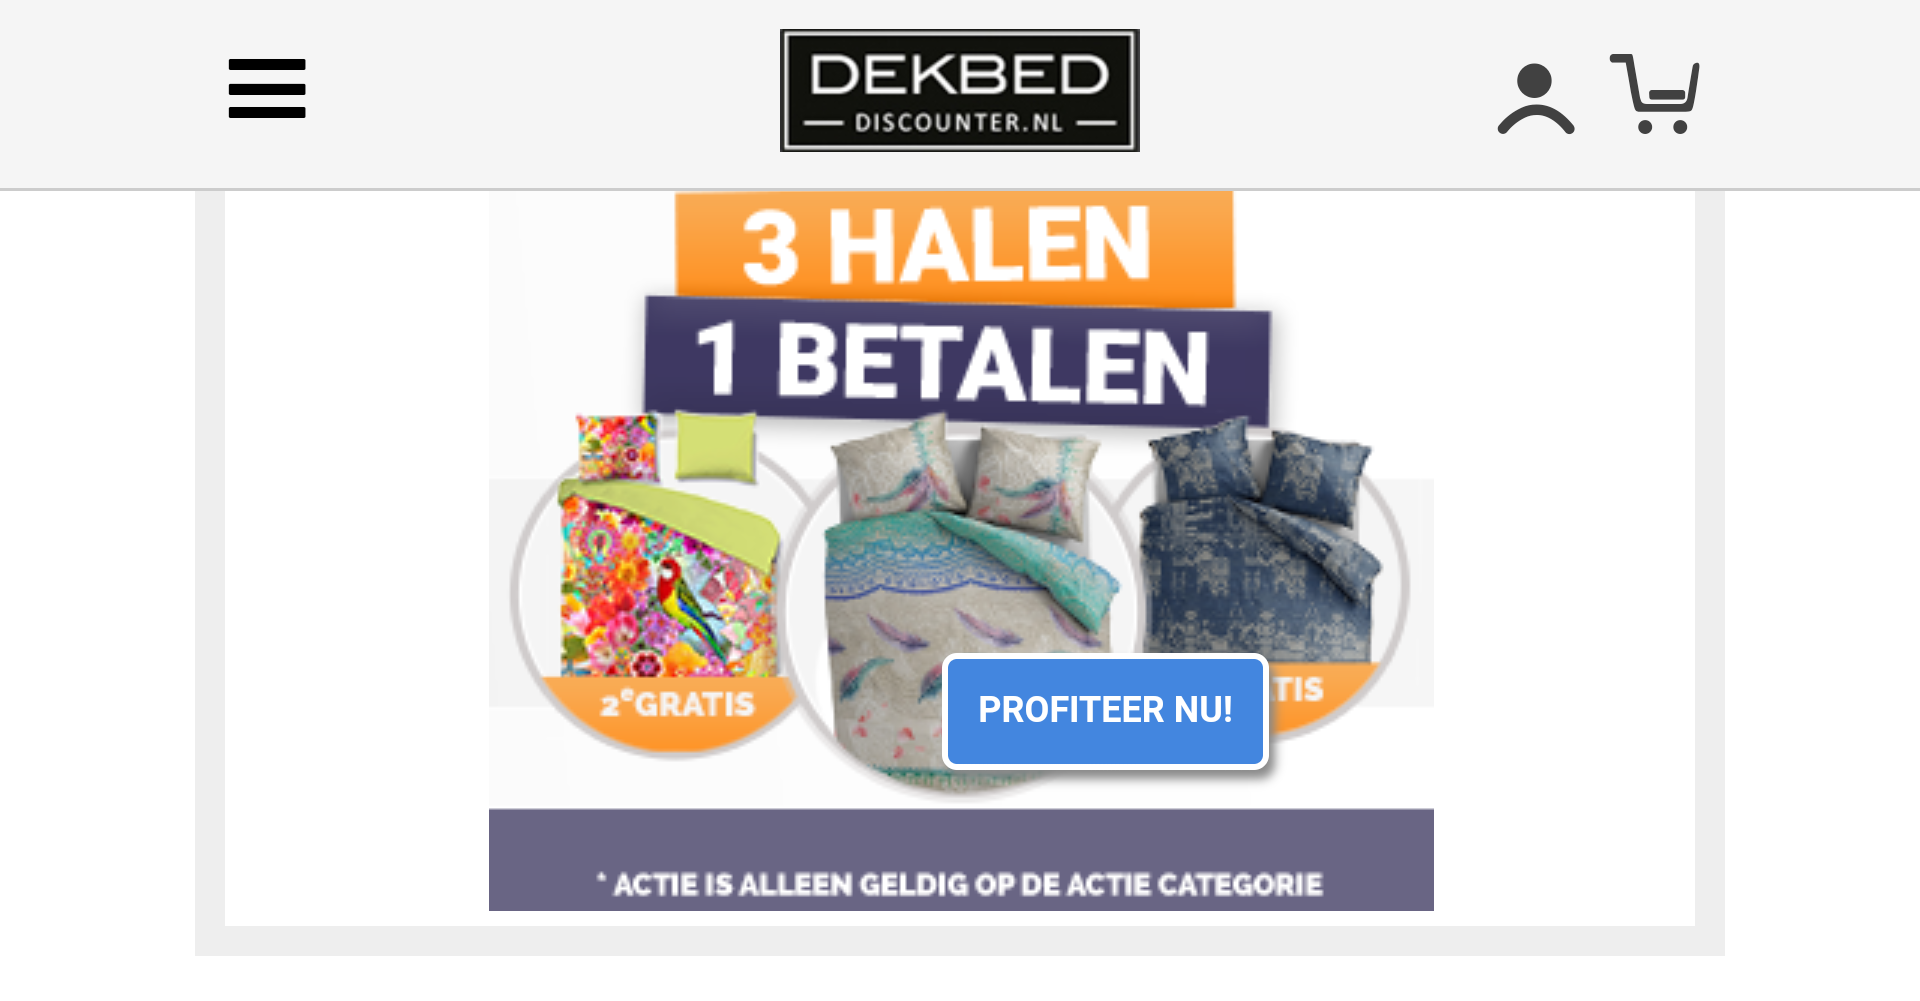 rukken mooi ik ga akkoord met Dekbed Discounter gaat voor omzetgroei van 280 procent |  www.beddingbusiness.nl